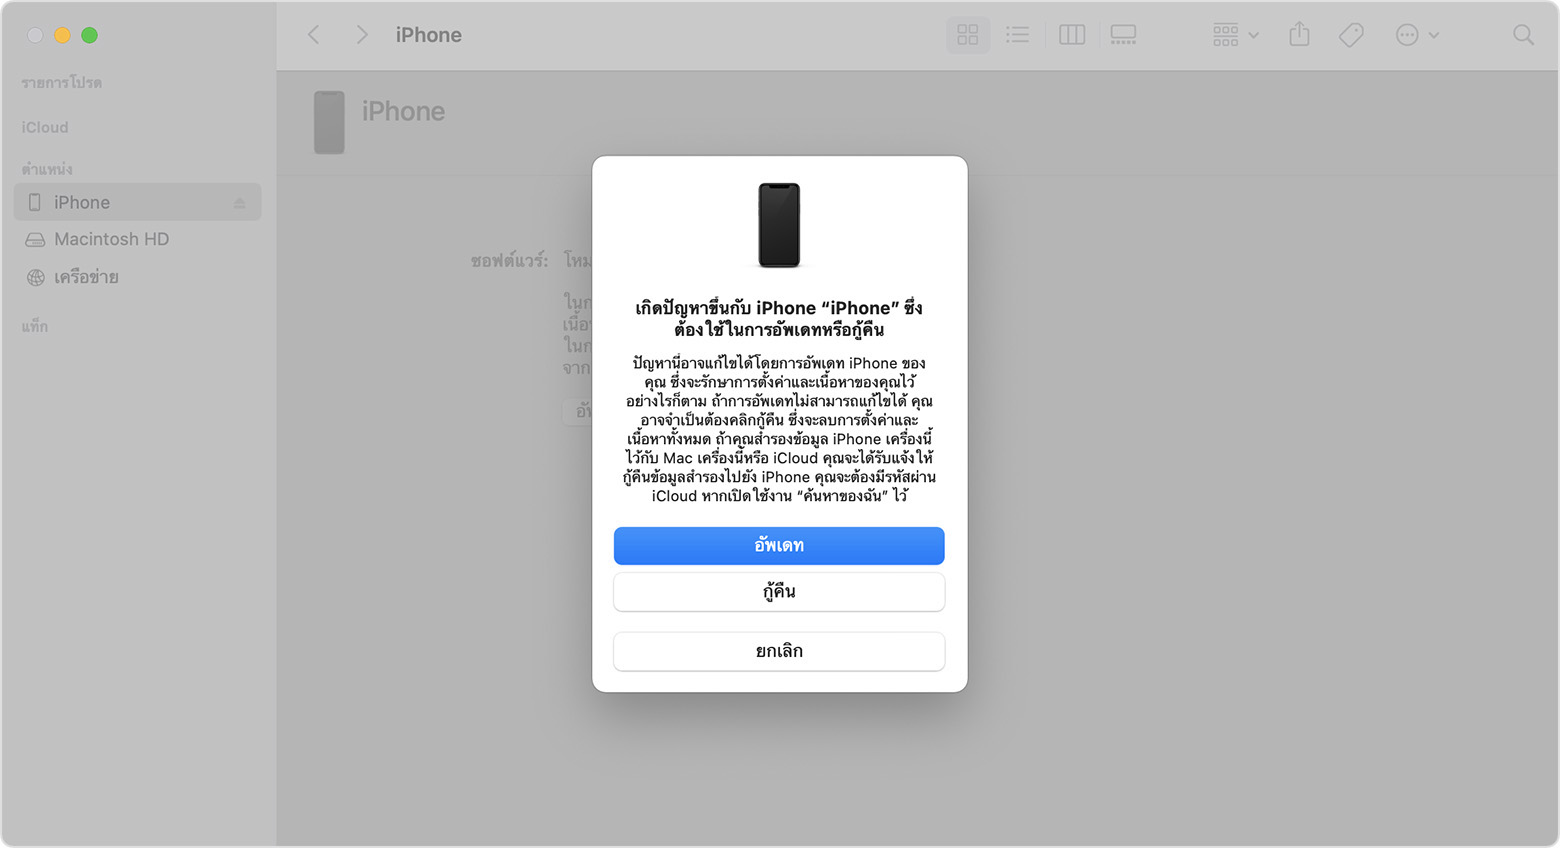 หน้าต่าง Finder ที่แสดงข้อความแจ้งโดยมีตัวเลือกให้อัปเดตหรือกู้คืน iPhone ของคุณ ซึ่งได้เลือก 